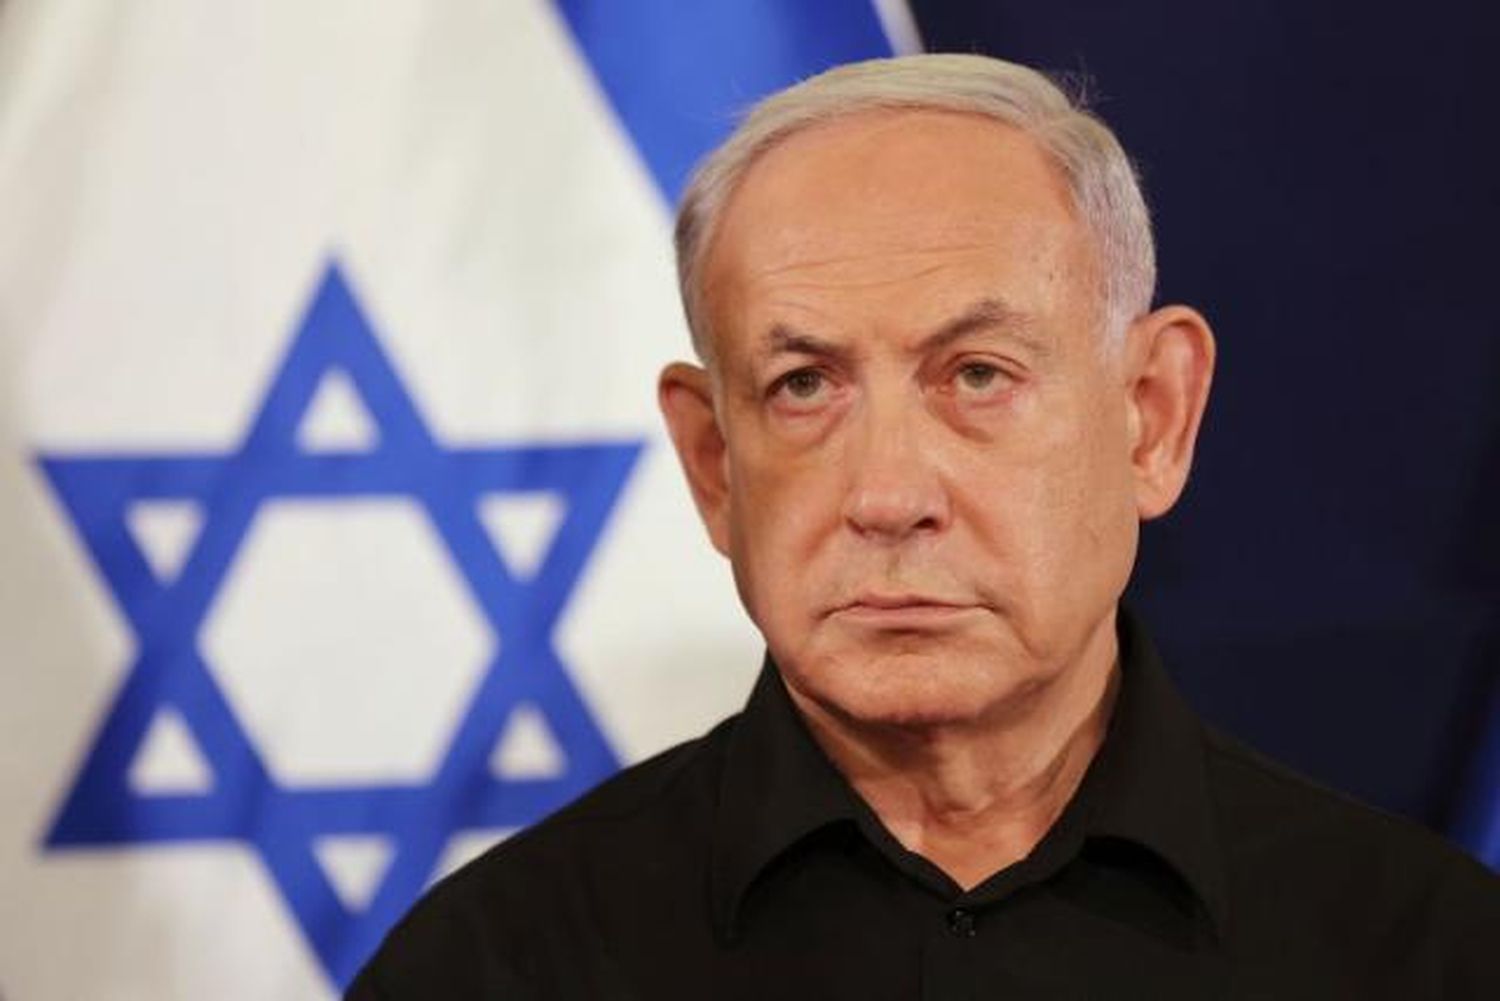 PM Netanyahu to undergo hernia surgery